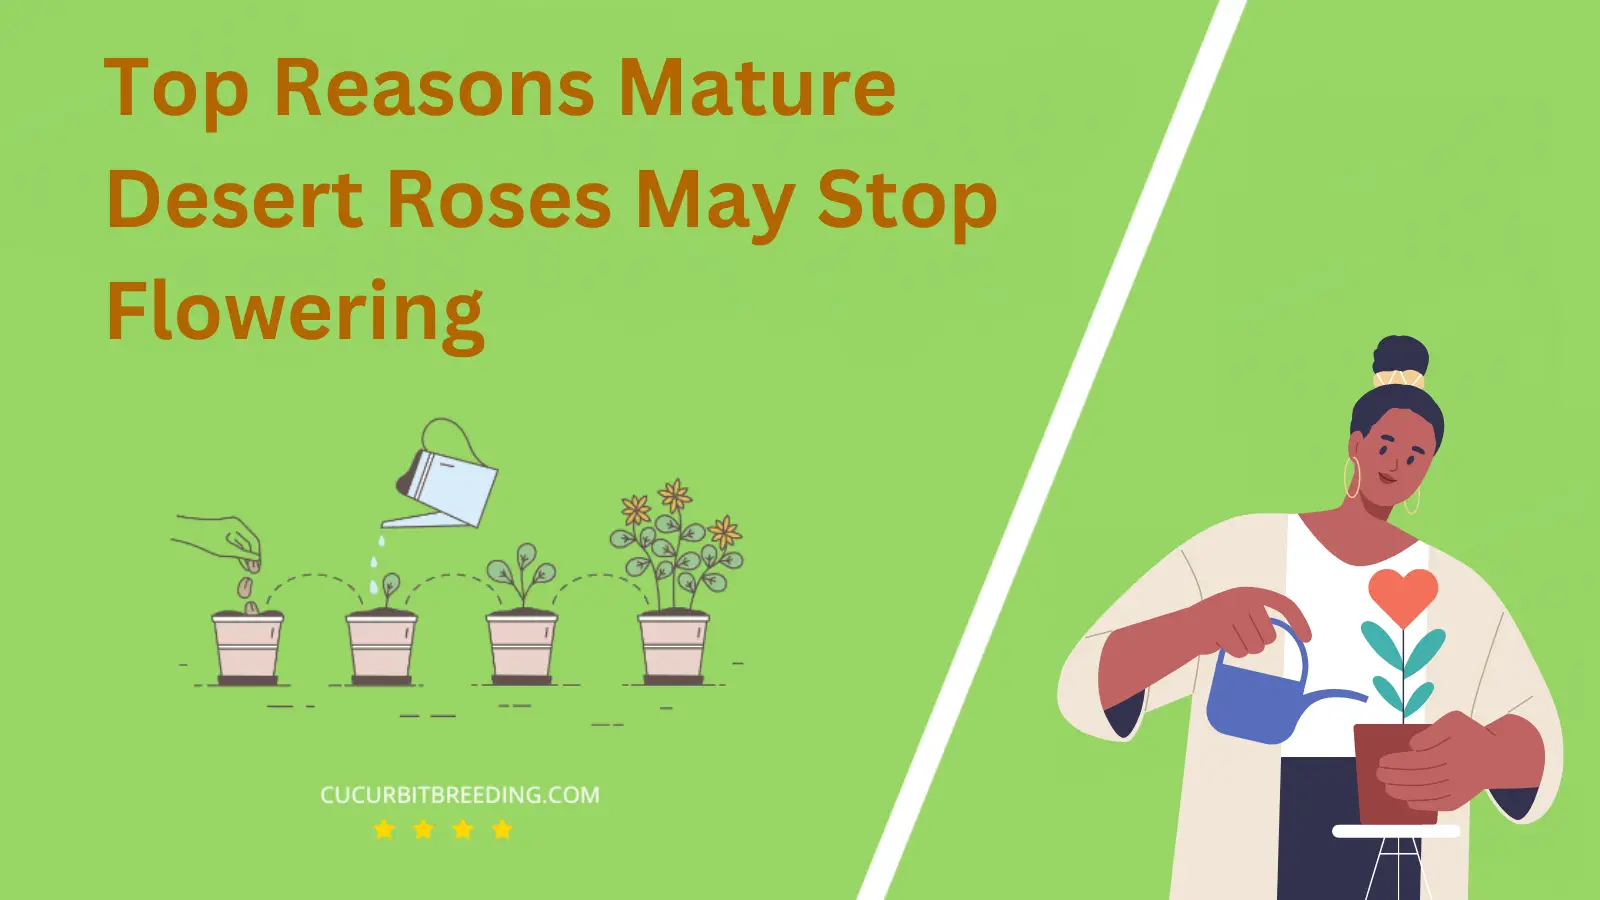 Top Reasons Mature Desert Roses May Stop Flowering